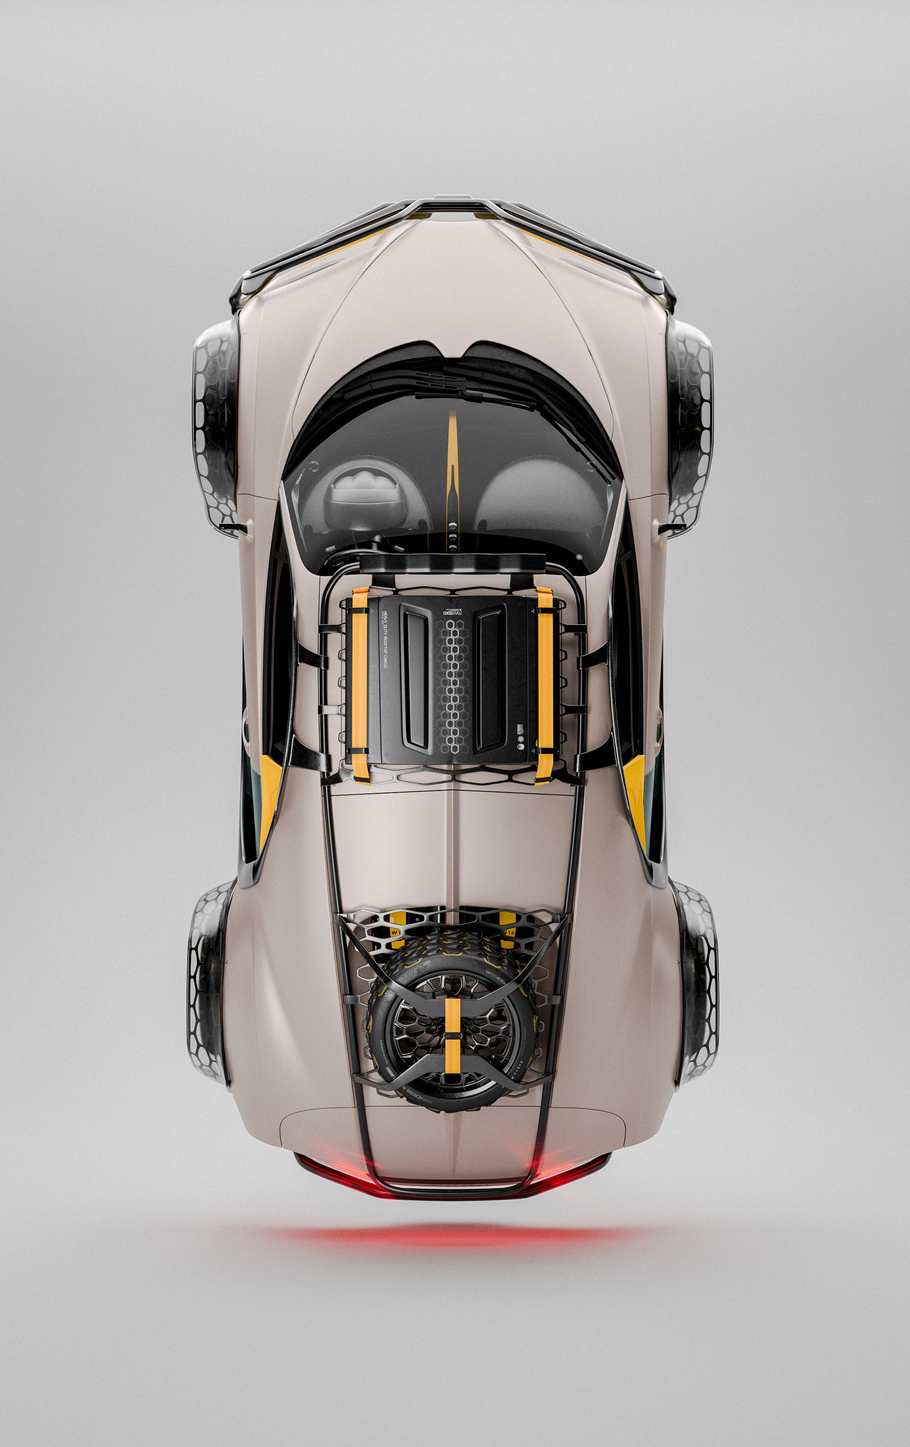 Есть ли будущее у внедорожника Bugatti